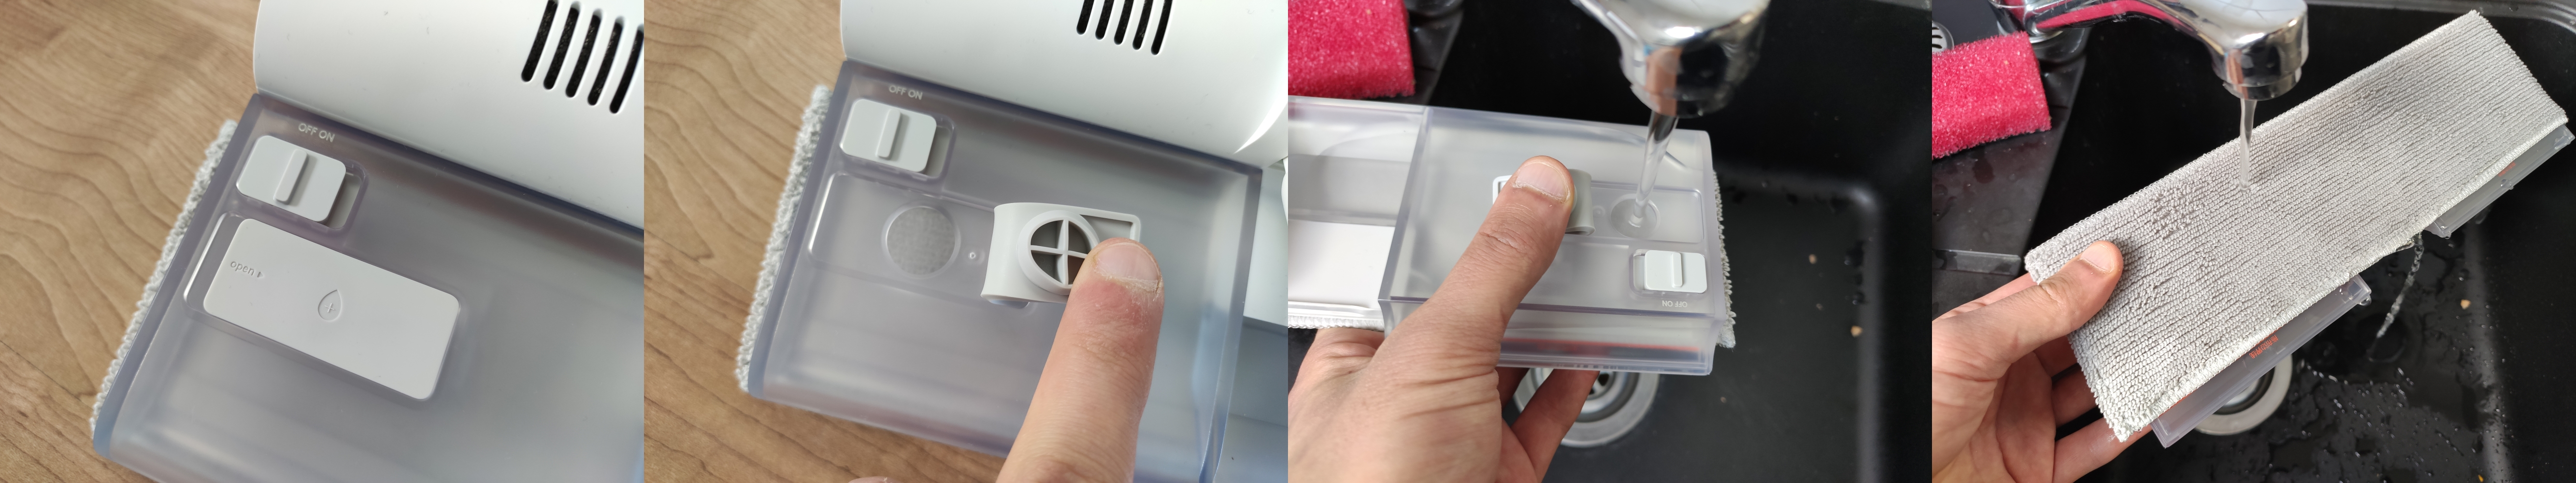 Xiaomi Mijia K10 Akkusauger Vorbereitung Wischfunktion Wassertank